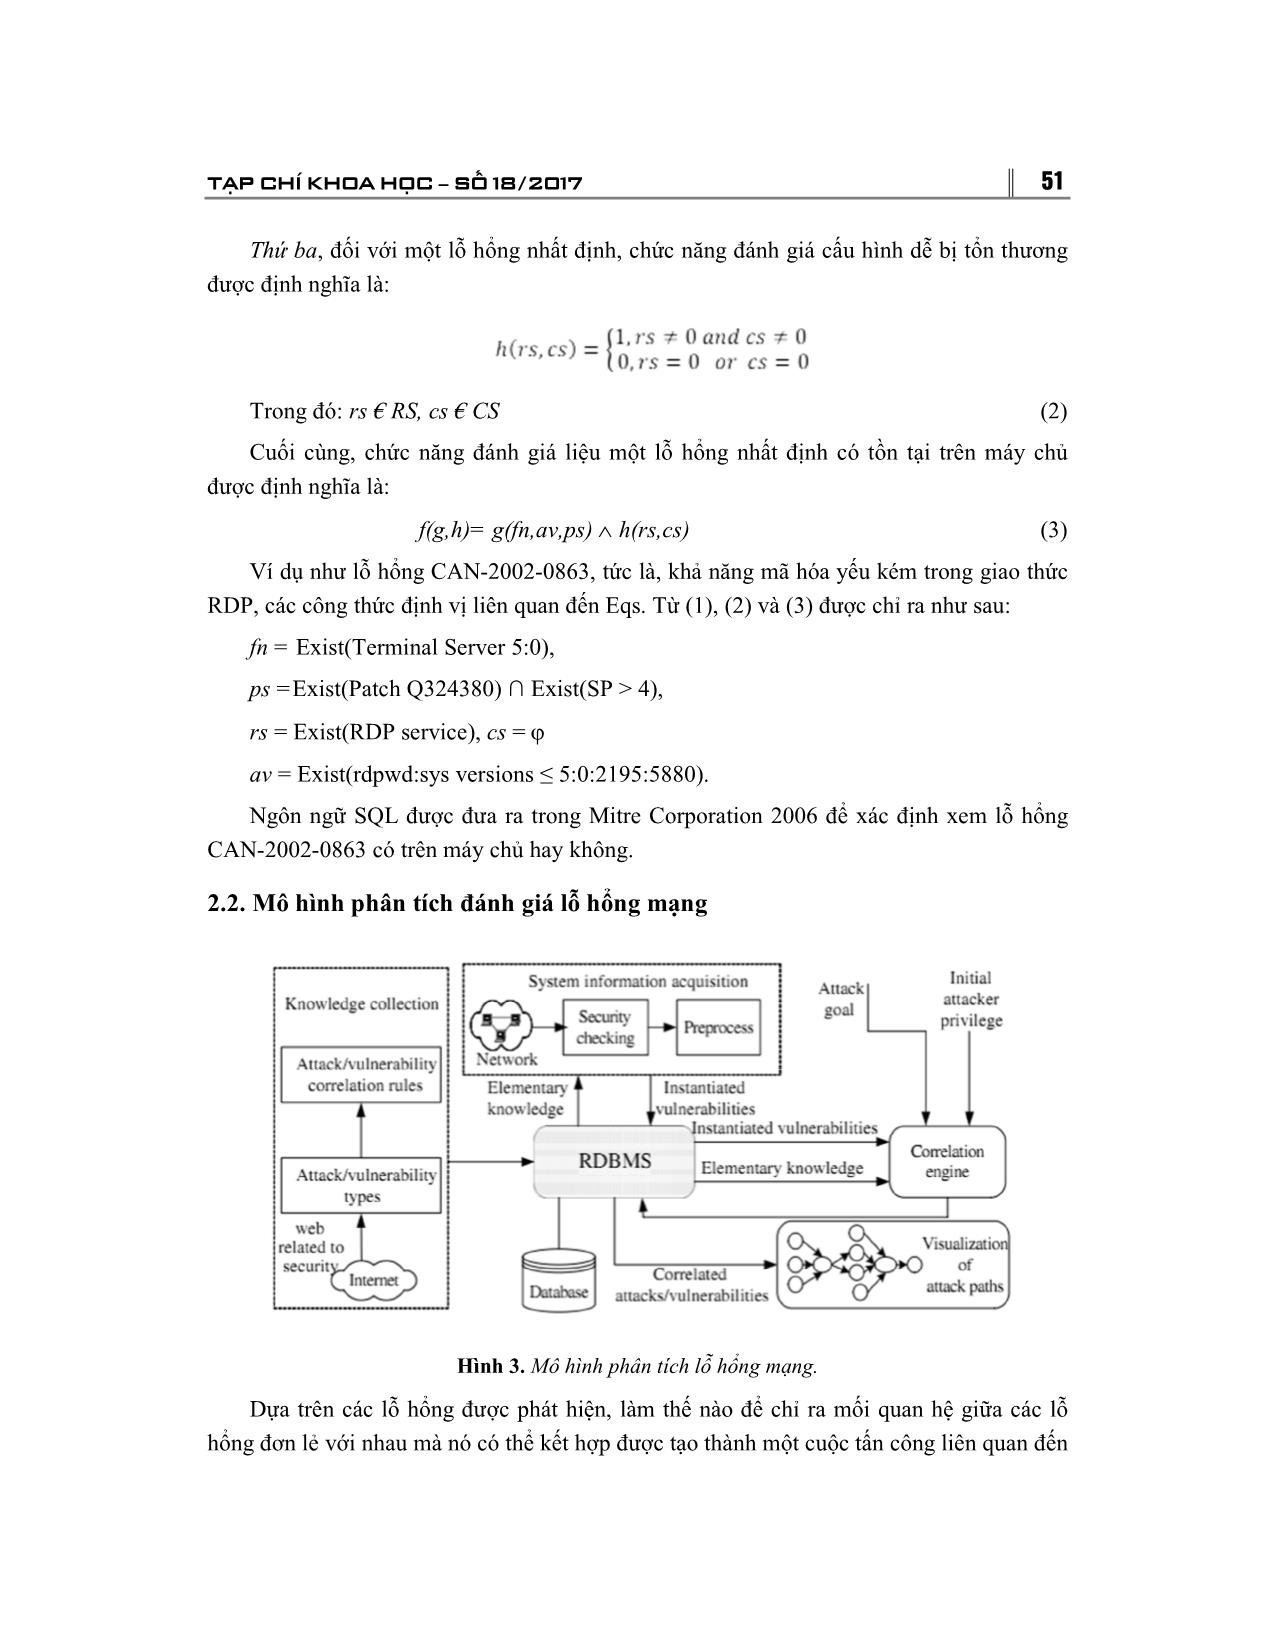 Một phương pháp đặc tả logic cho việc đánh giá và phân tích lỗ hổng an ninh mạng trang 6